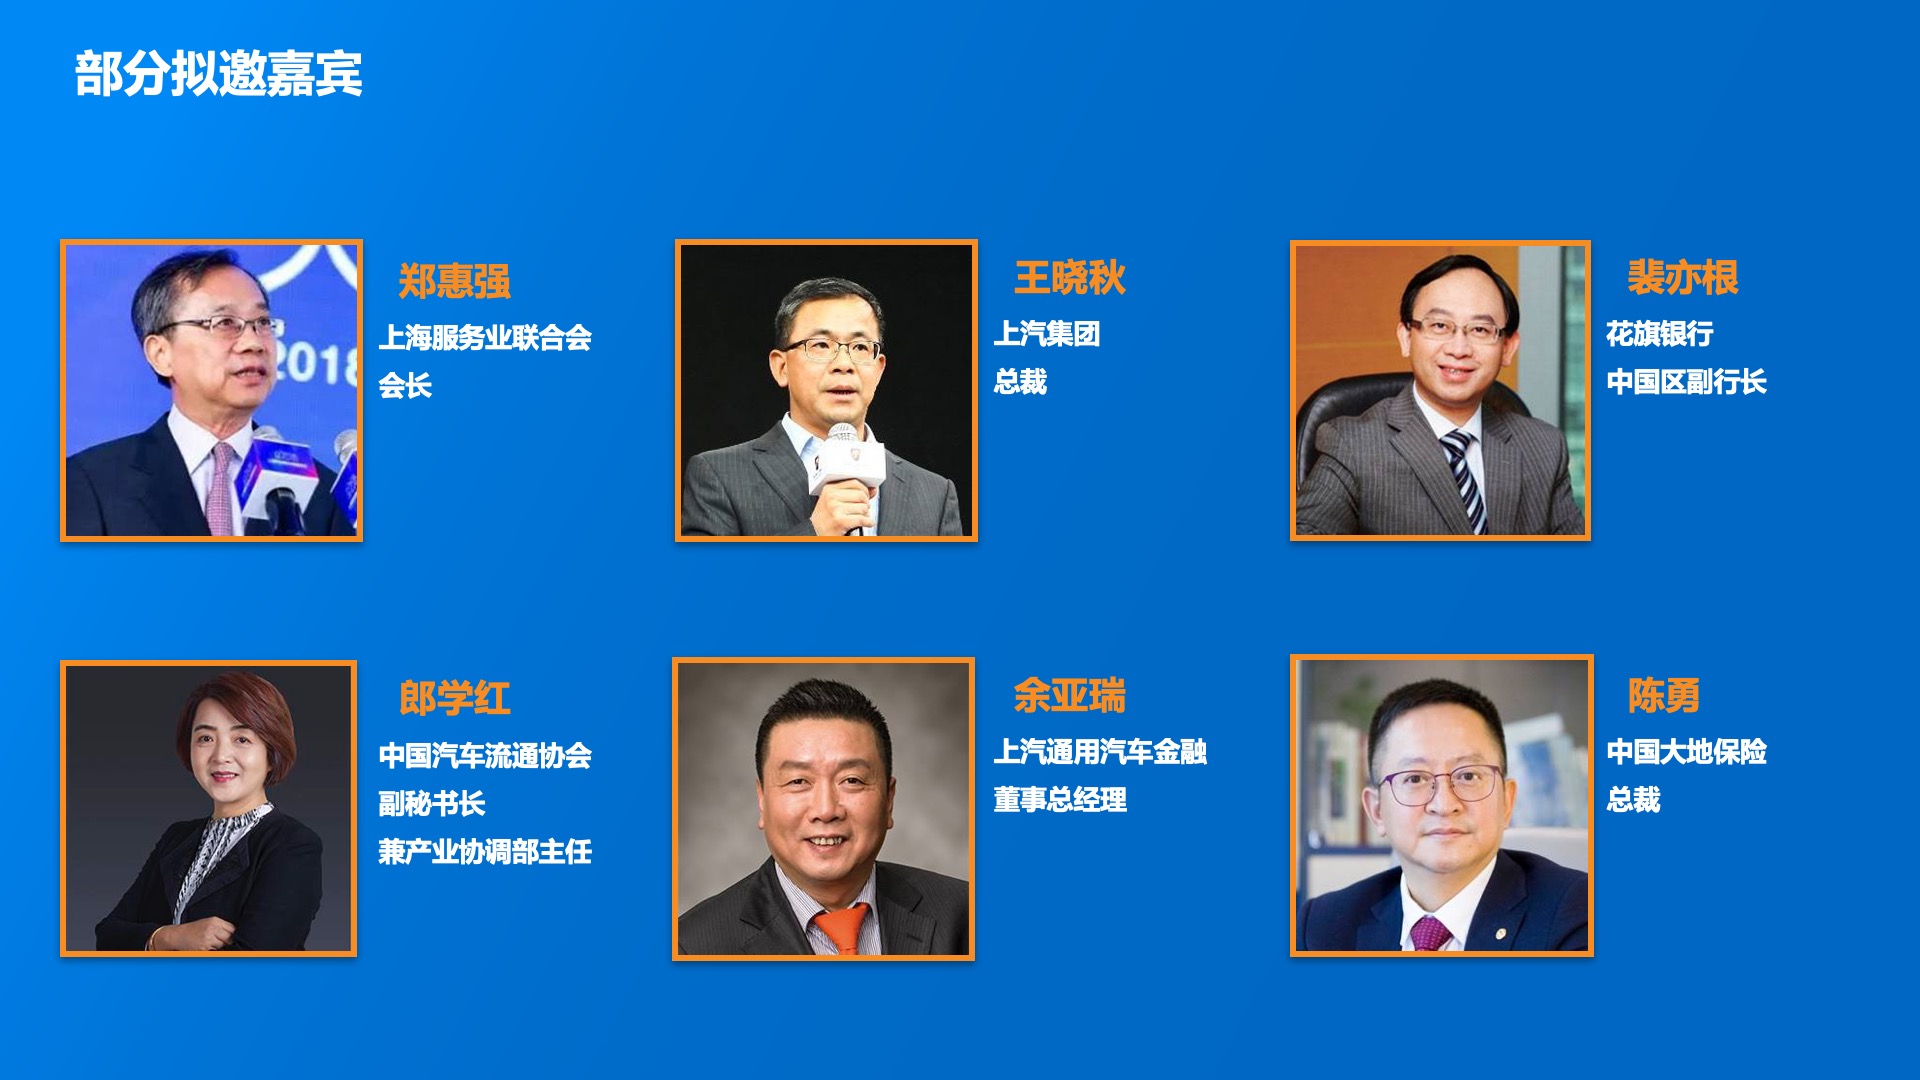 陆家嘴产业金融论坛暨GIIS2019第三届汽车新消费峰会（上海）